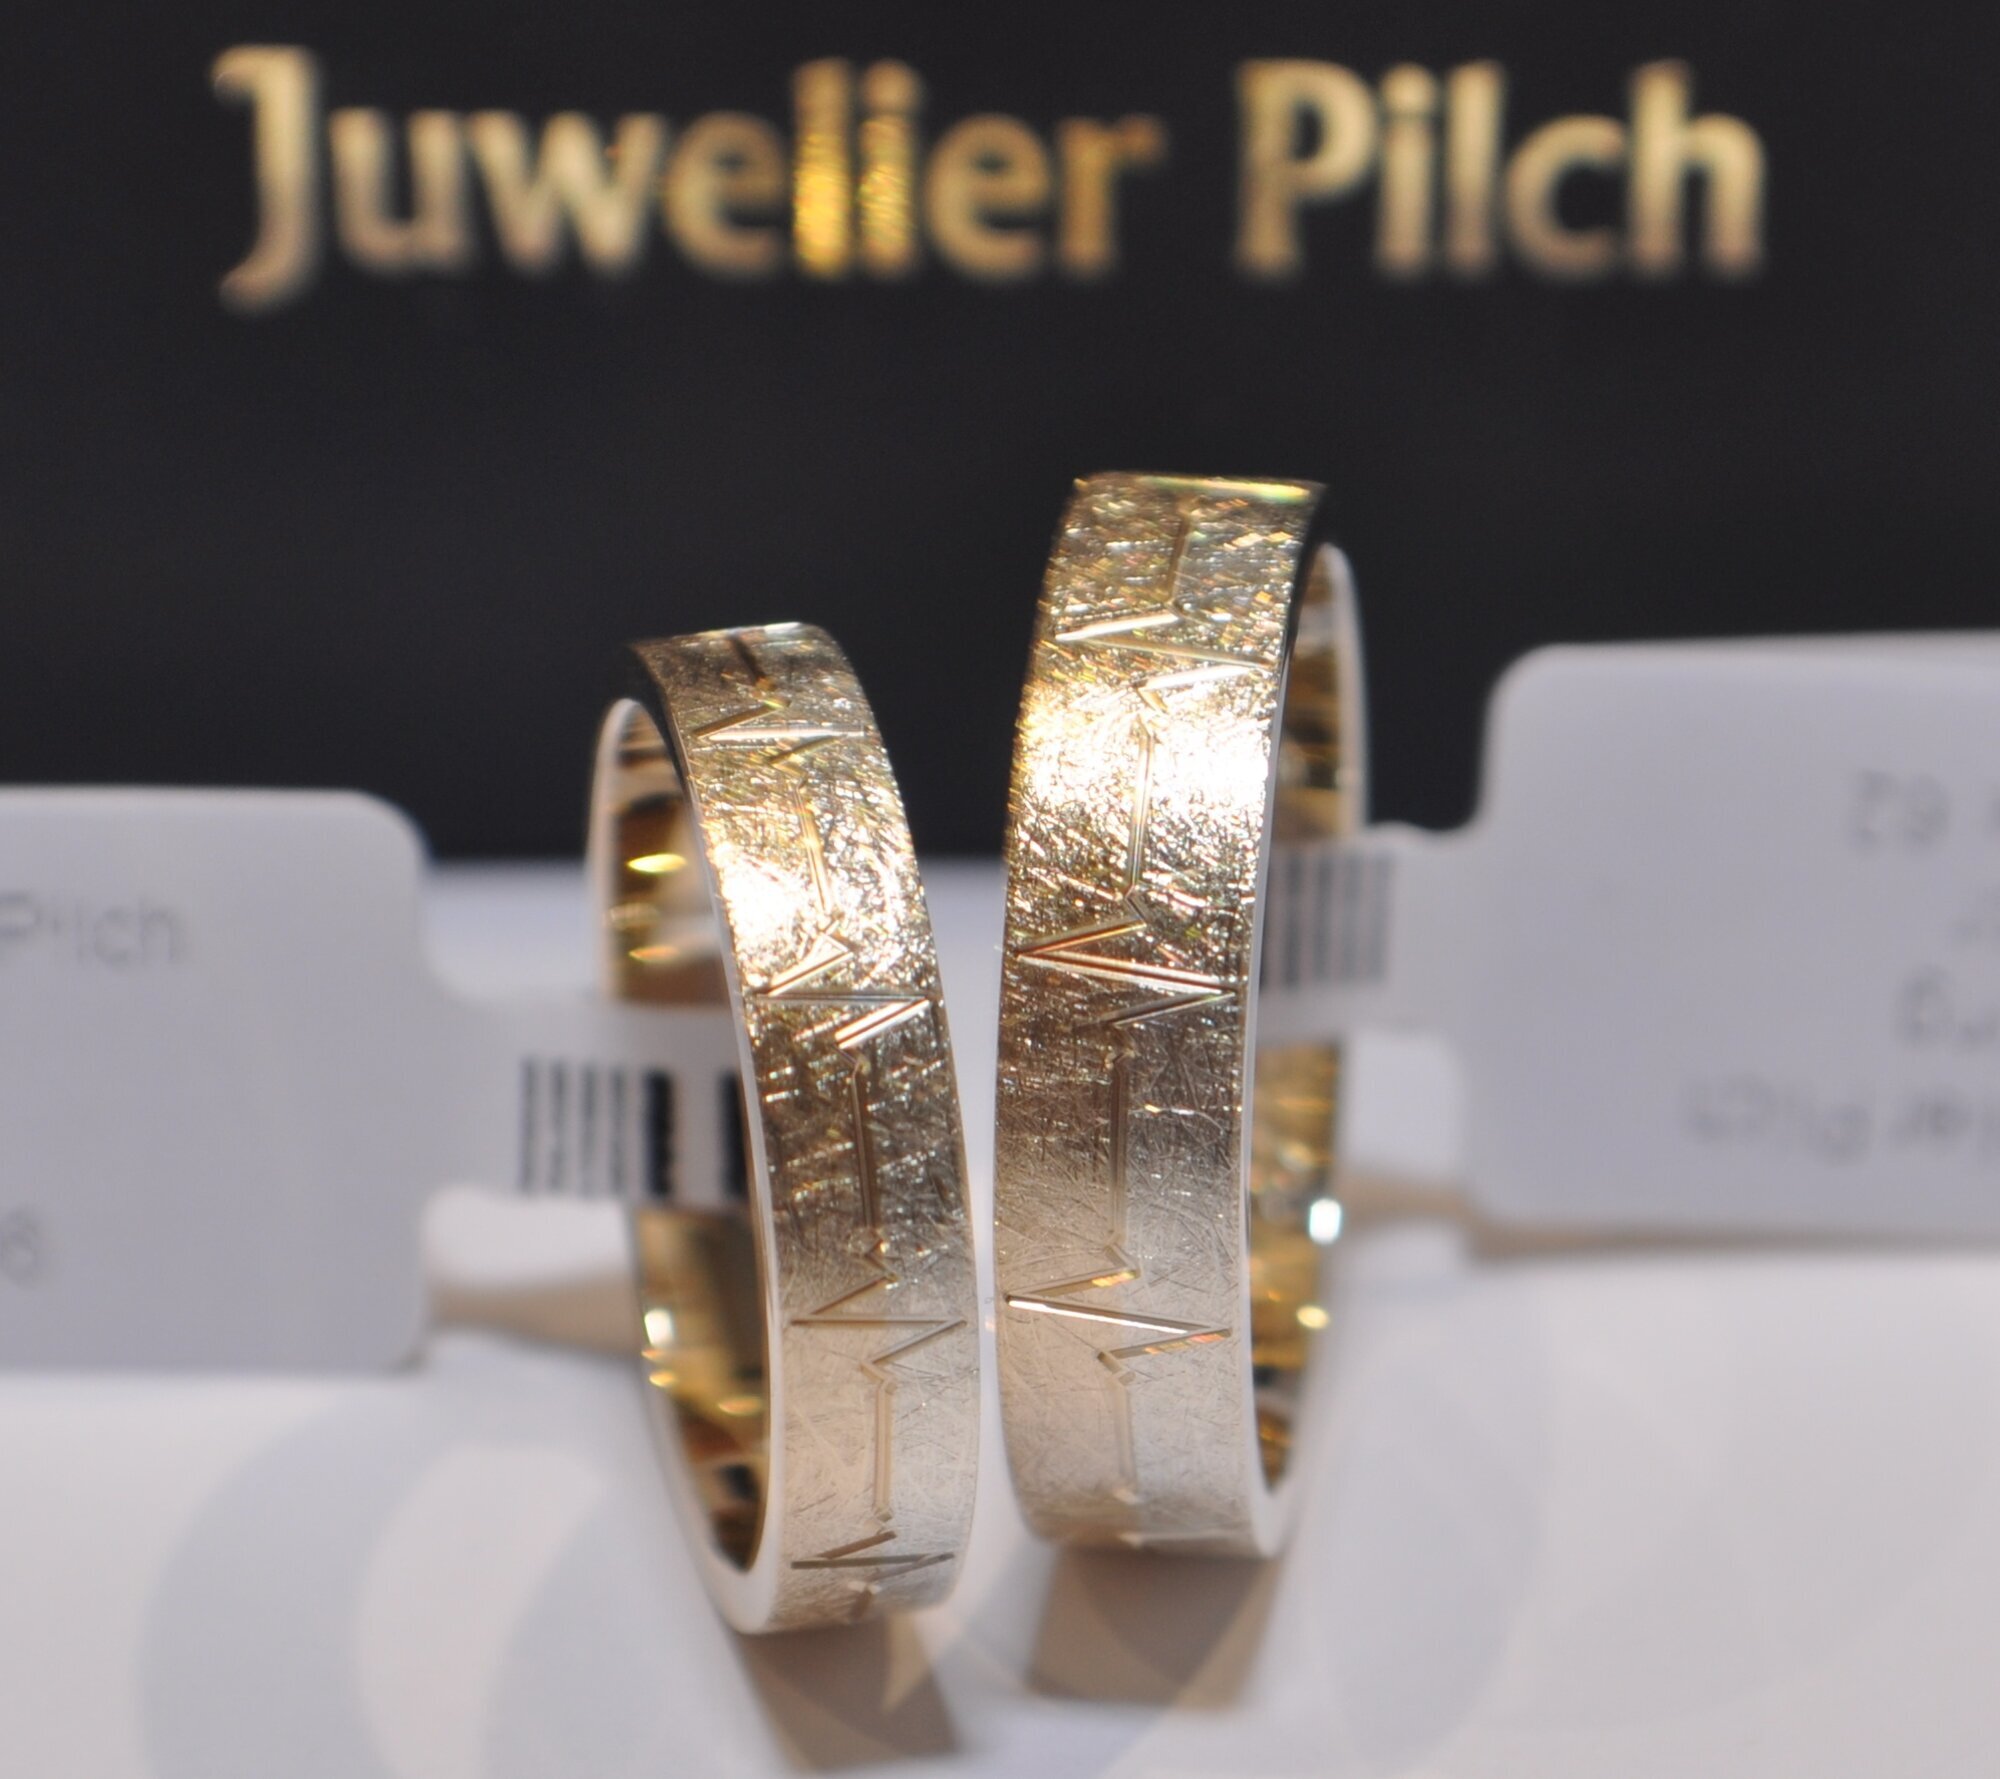 Kundenbild groß 60 Trauringstudio Erding - Trauringe Verlobungsringe Schmuck by Juwelier Pilch